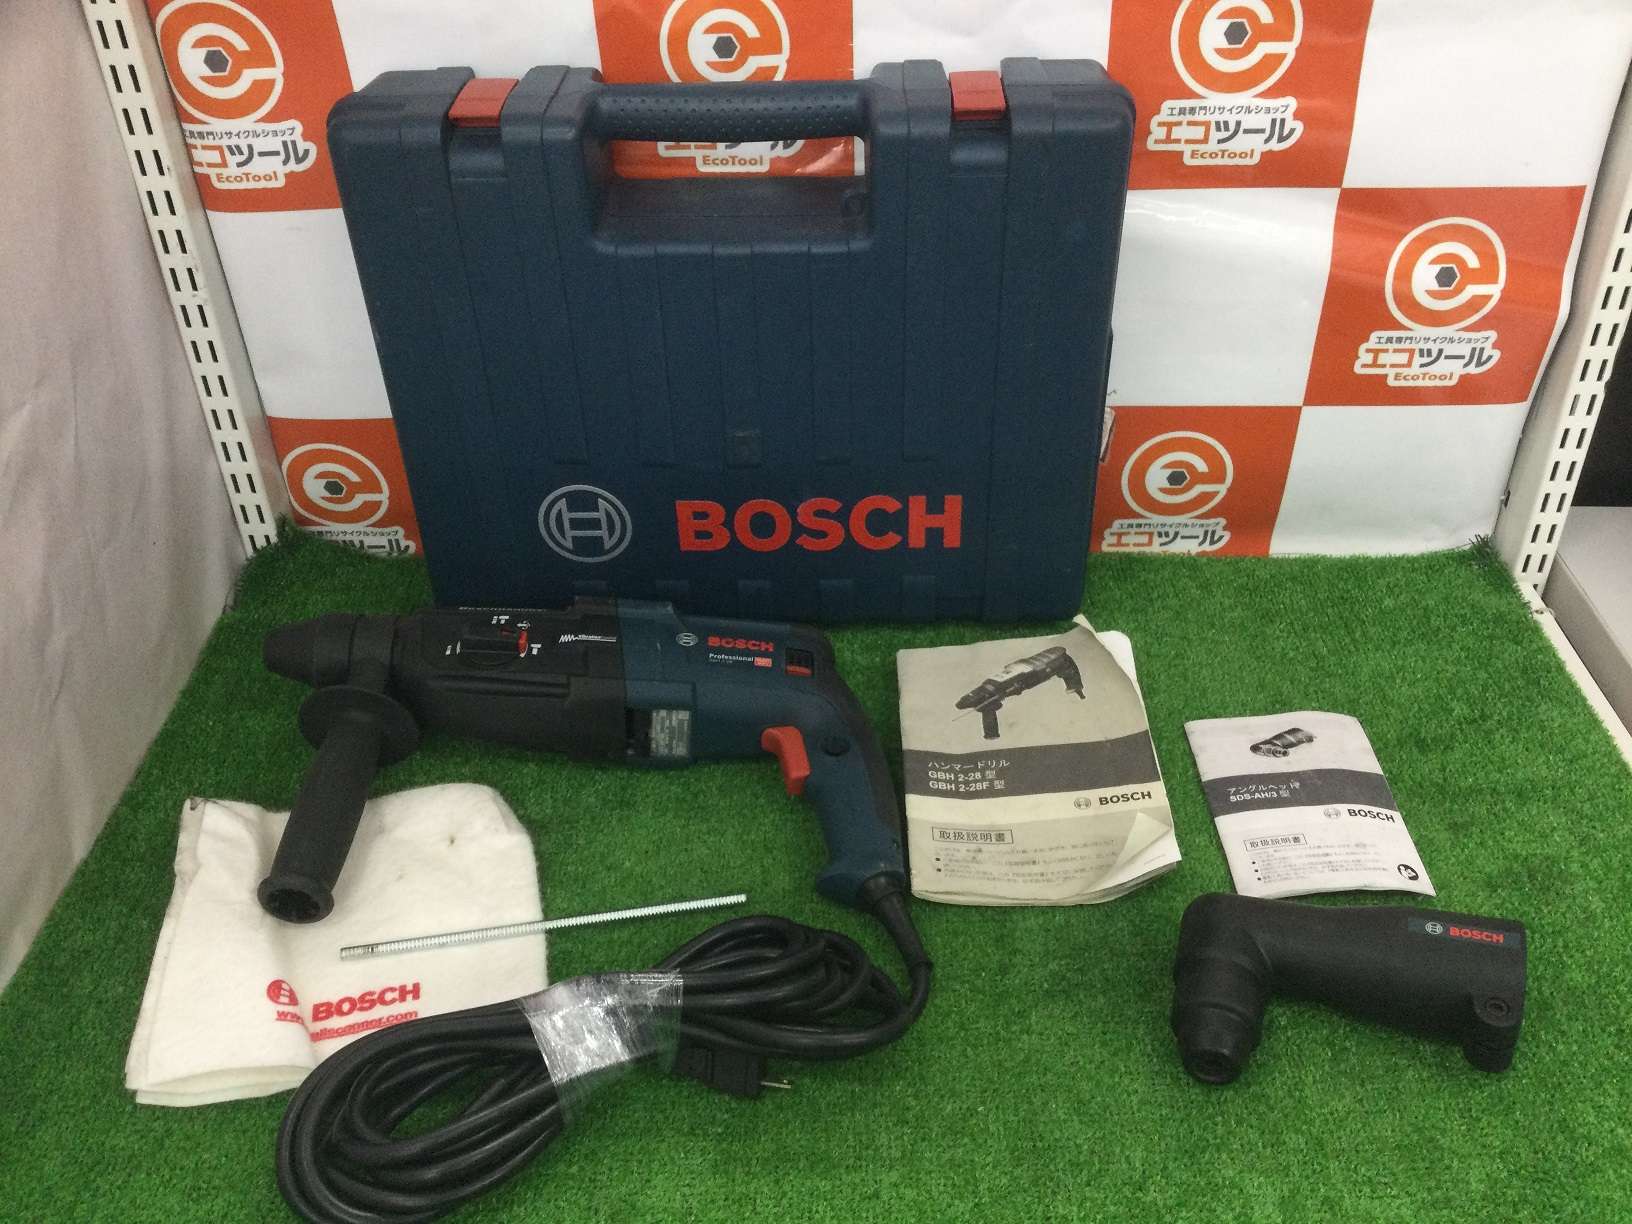 Bosch Professional(ボッシュ) SDSプラスハンマードリル